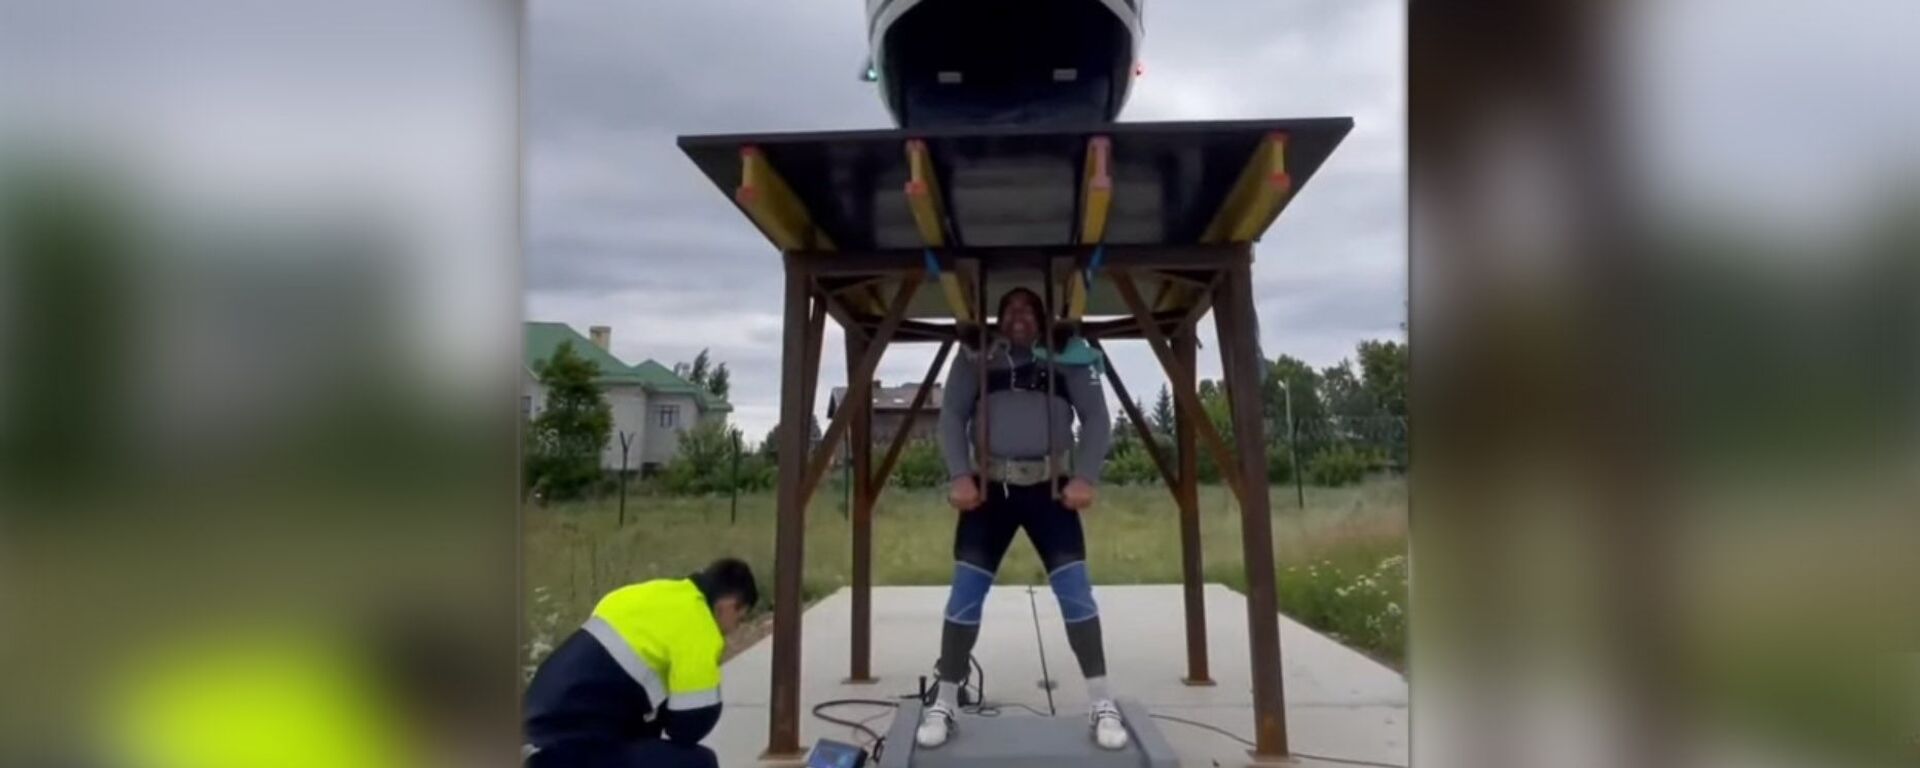 Силач поднял платформу с вертолетом весом 1,5 тонны — видео. Это рекорд - Sputnik Кыргызстан, 1920, 24.07.2021